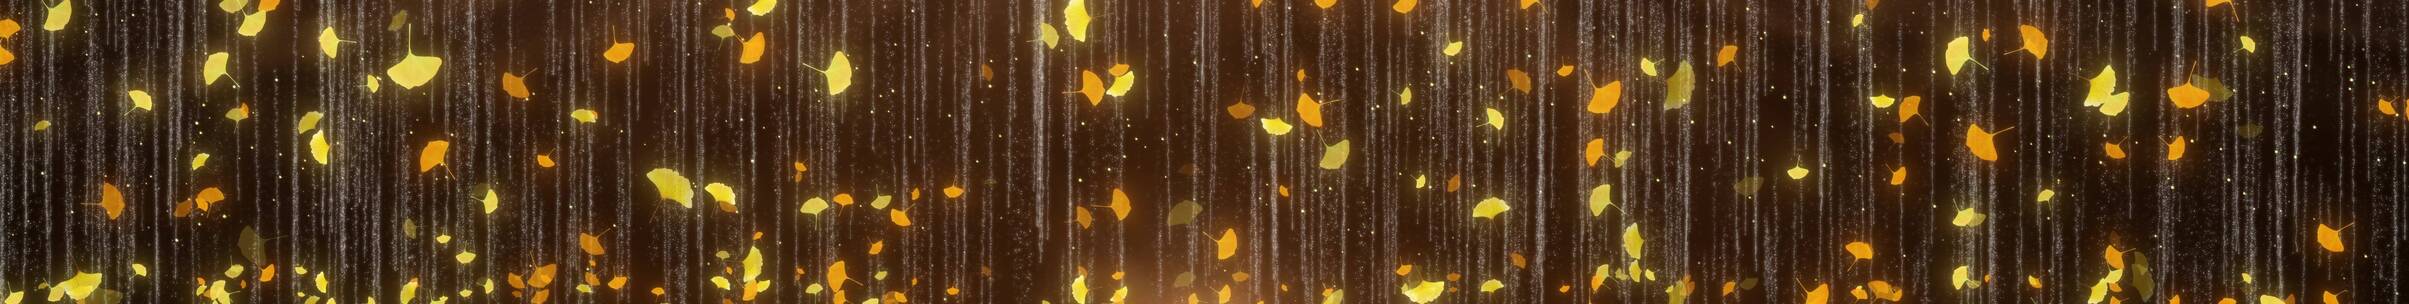 银杏 树叶飘落 秋天风景